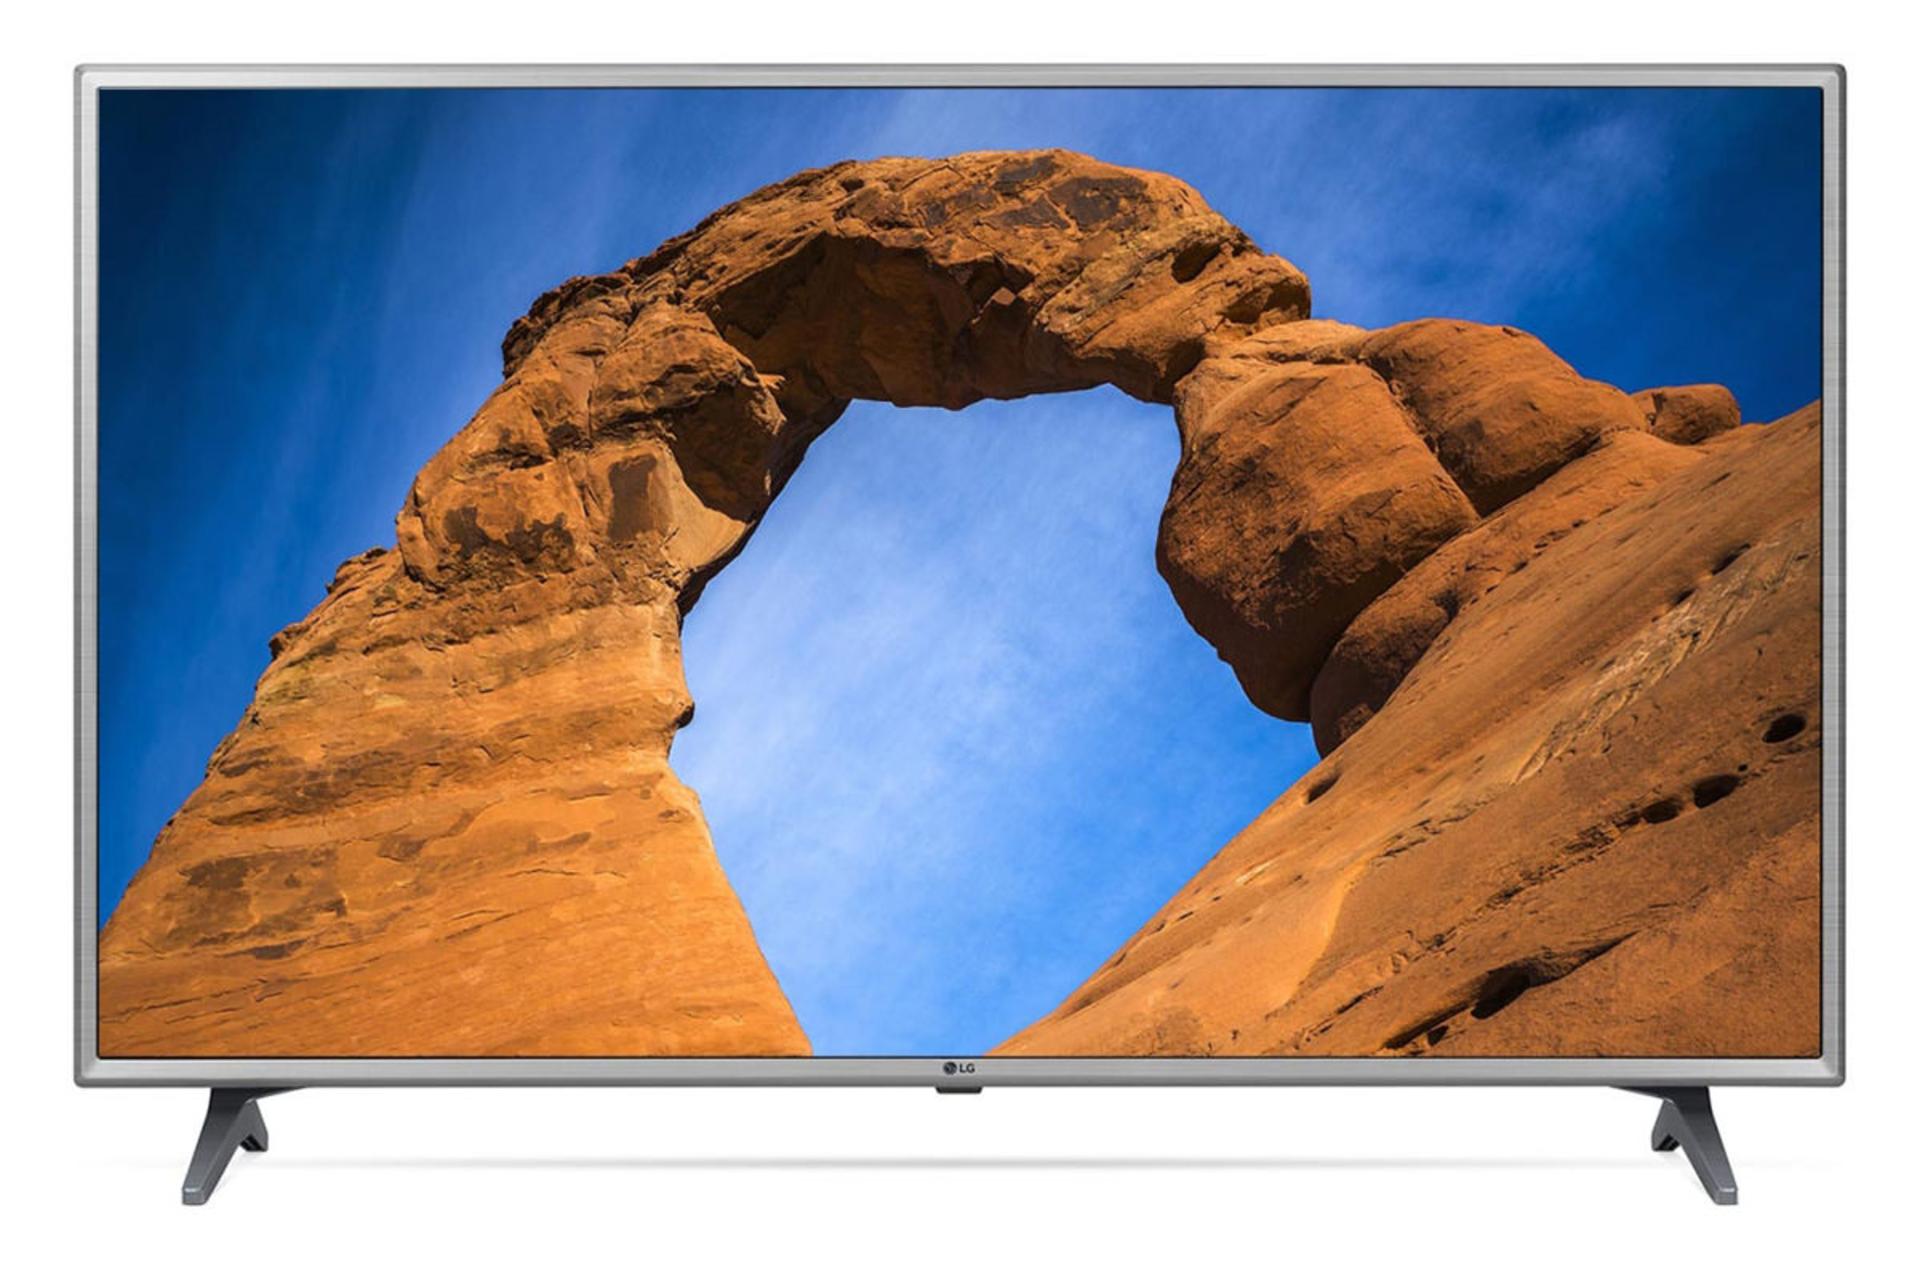  نمای جلوی تلویزیون ال جی LK6300 مدل 49 اینچ با رنگ نقره ای و صفحه روشن